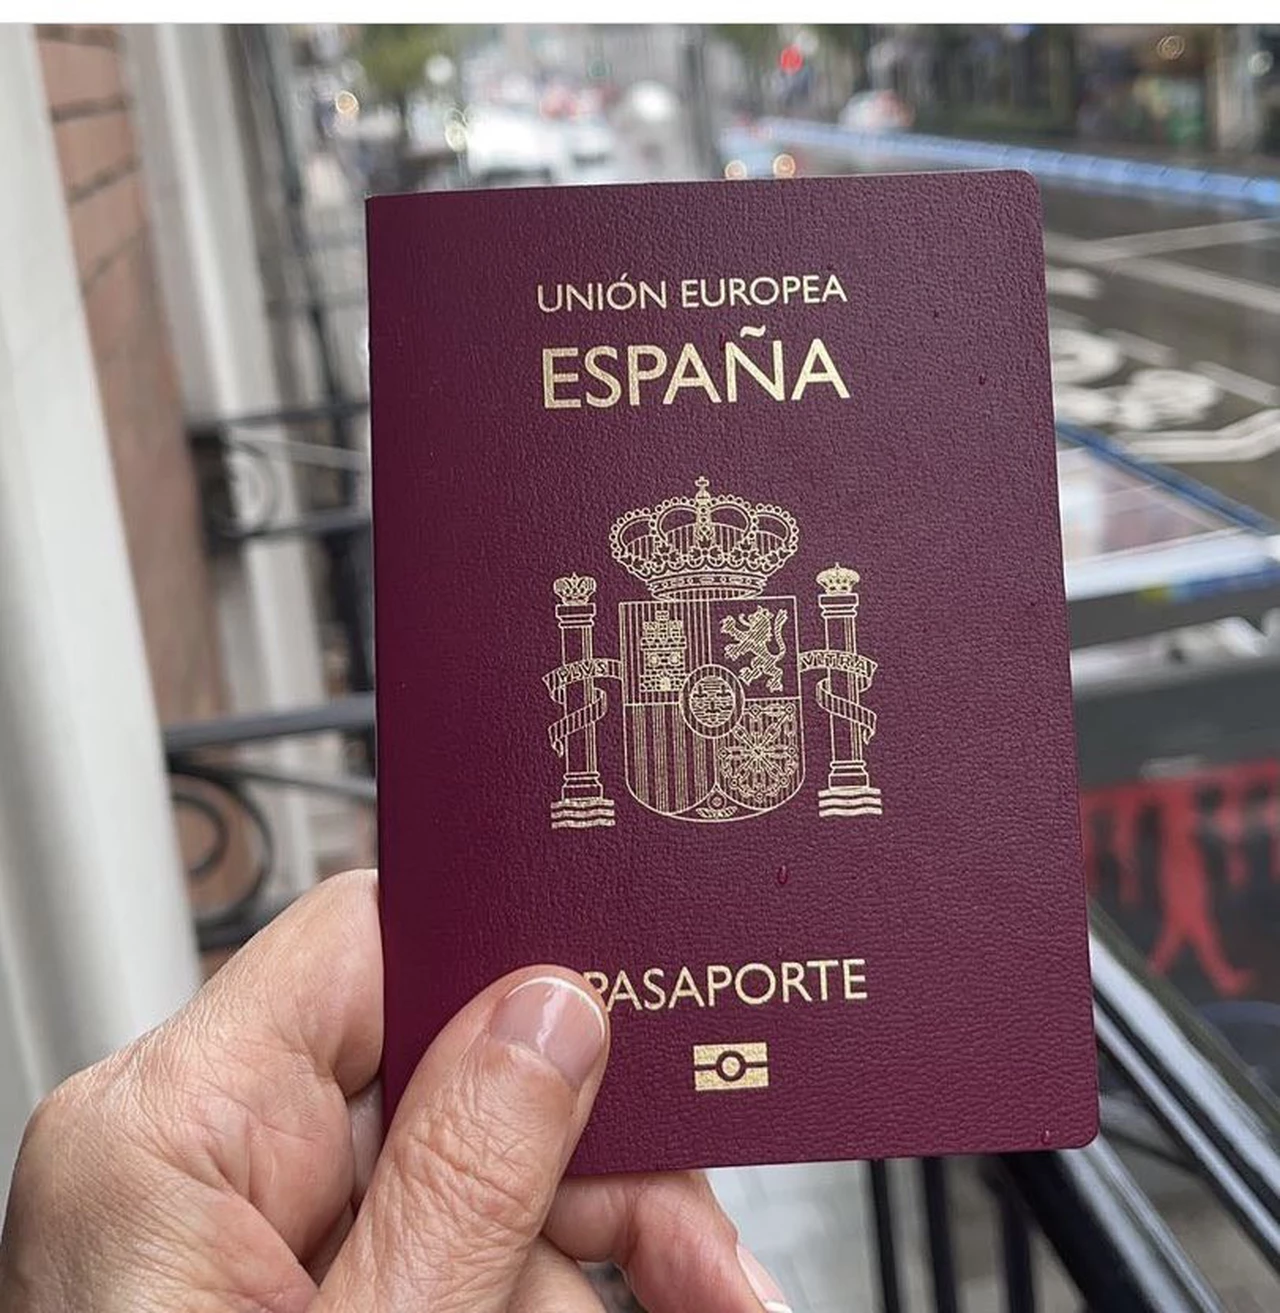 ¿Cuáles son los apellidos españoles que pueden obtener nacionalidad?